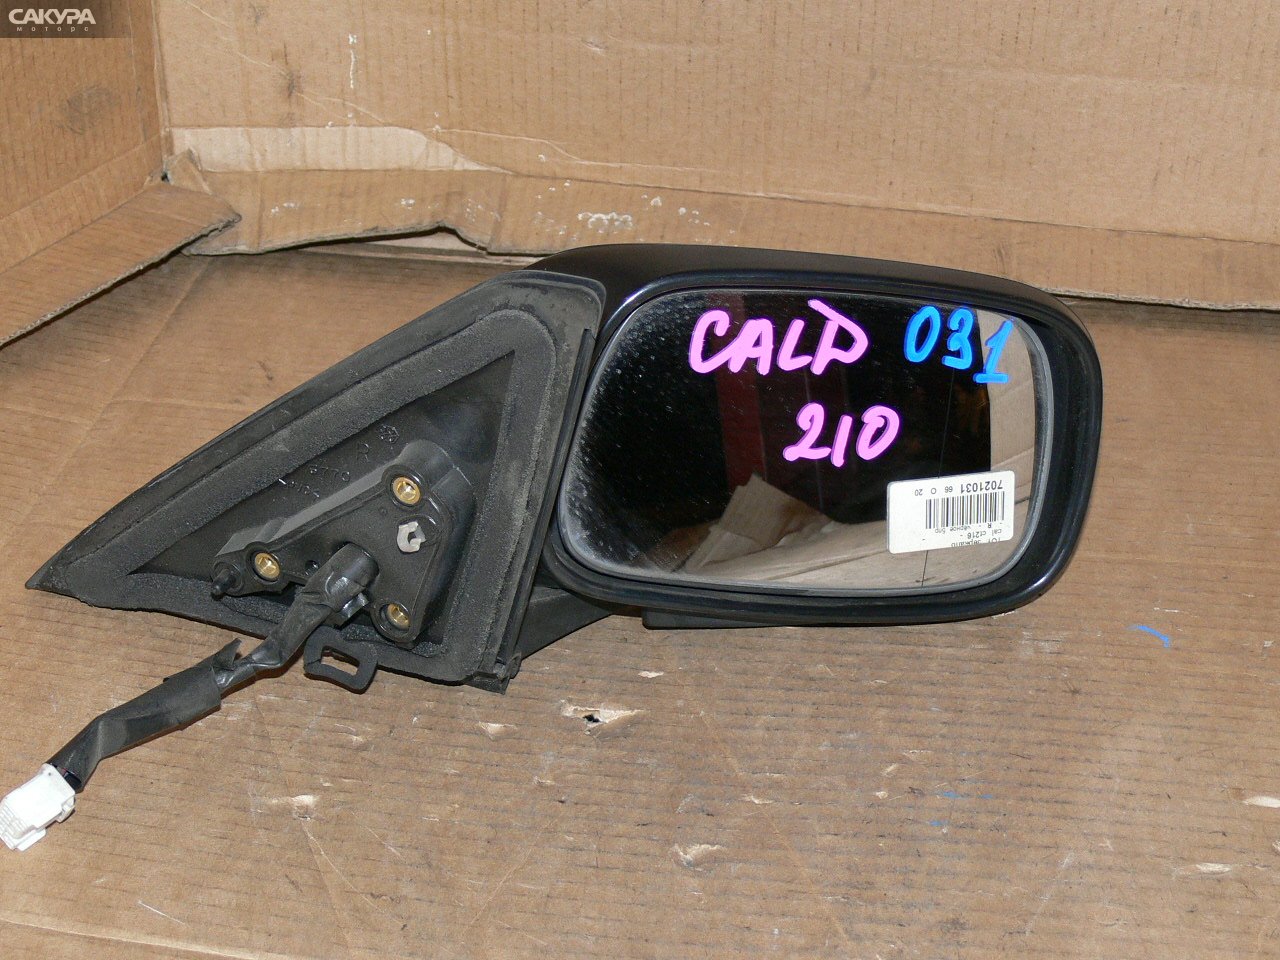 Зеркало боковое правое Toyota Caldina CT216G: купить в Сакура Иркутск.